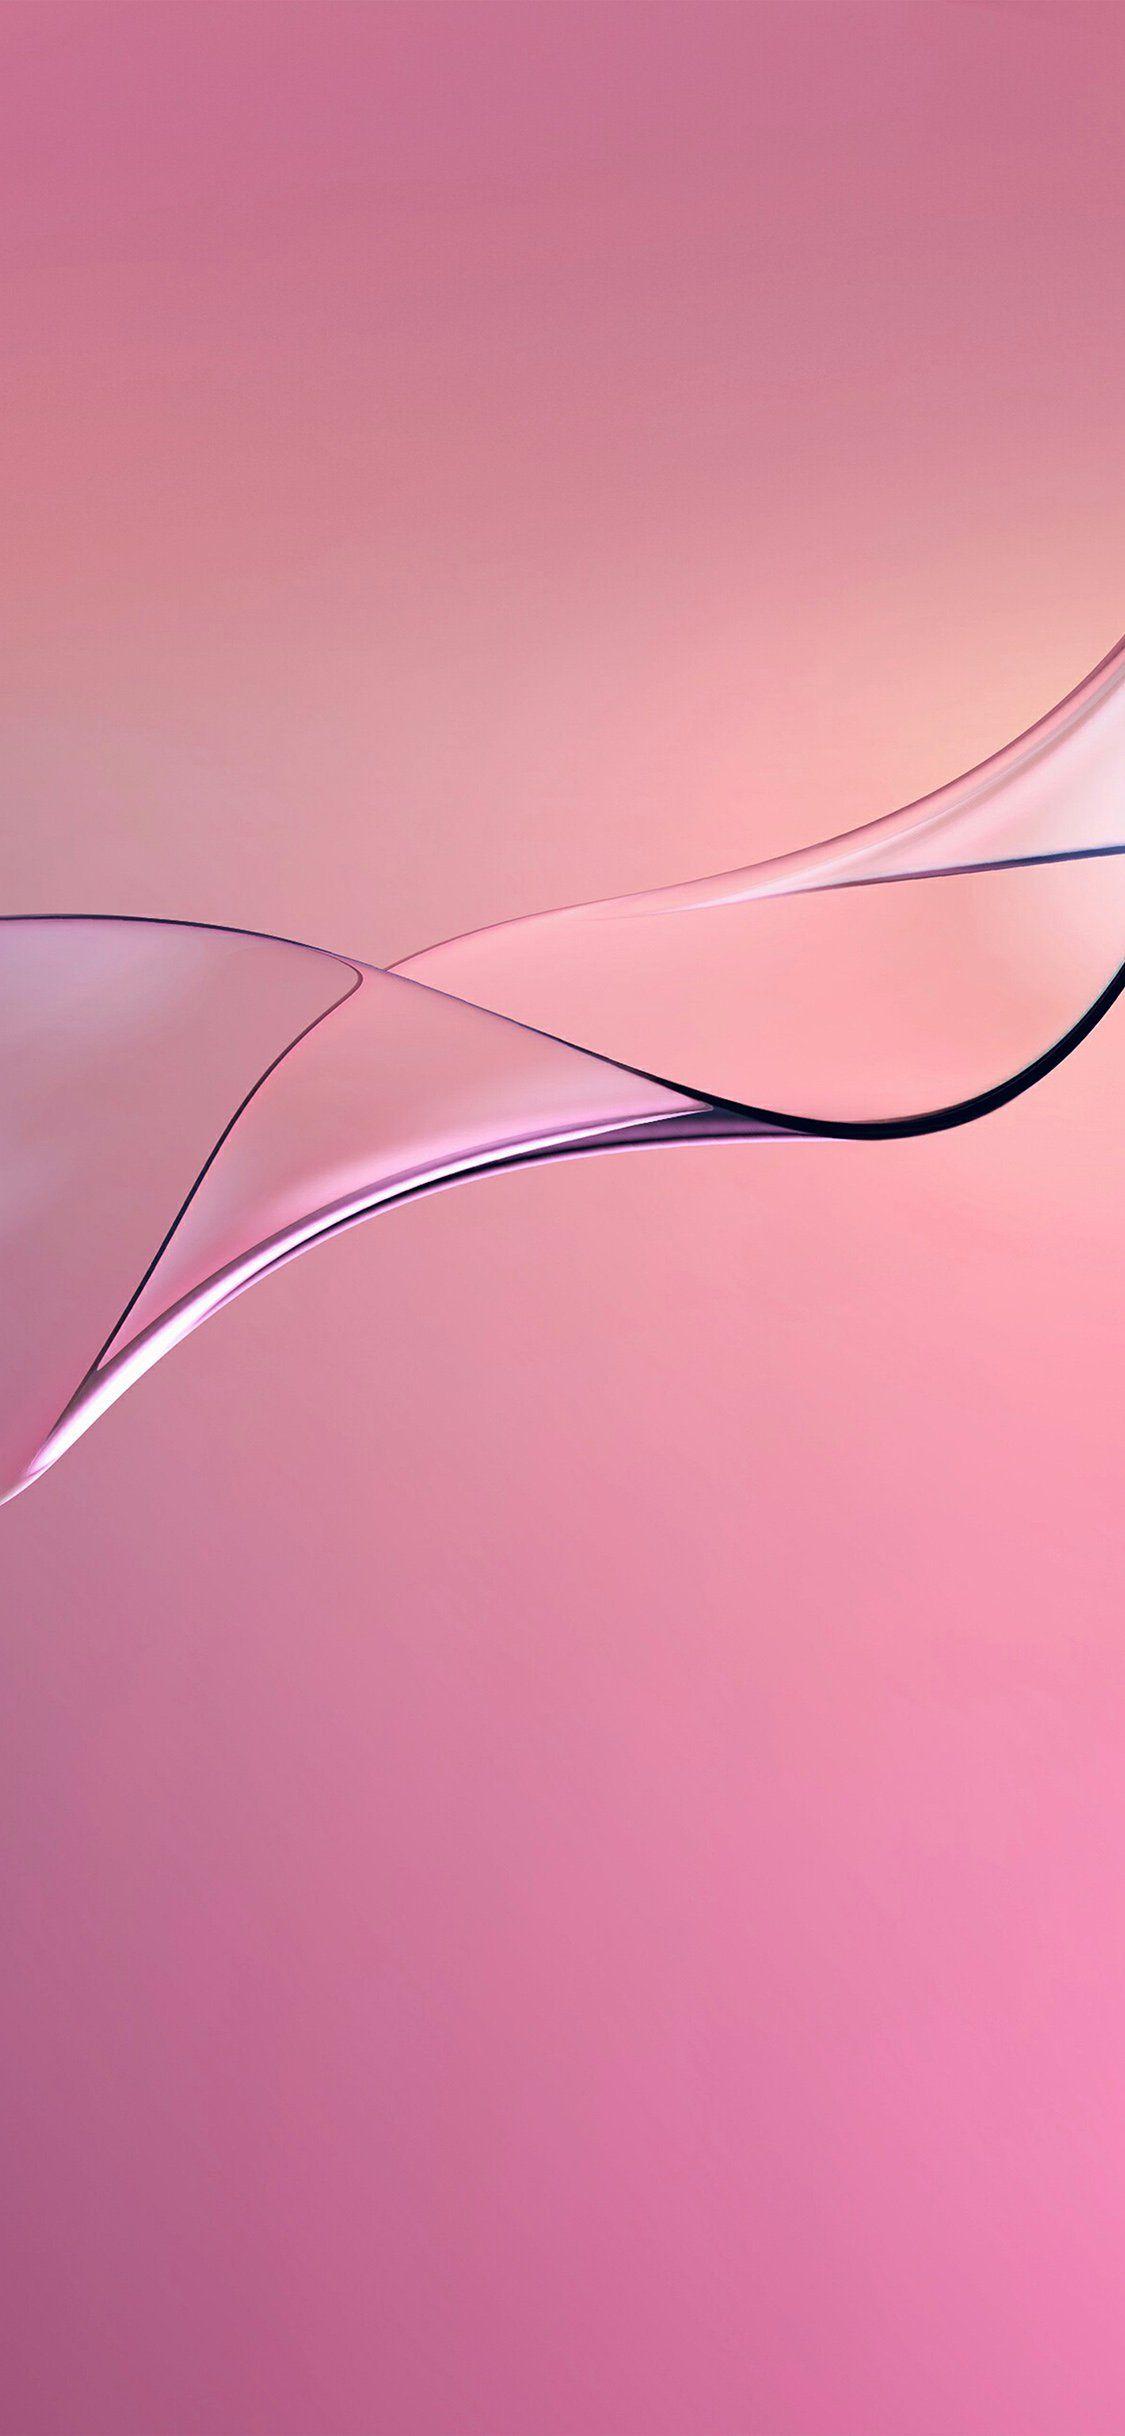 Hình nền iPhone X 1125x2436.  đường cong màu hồng trừu tượng